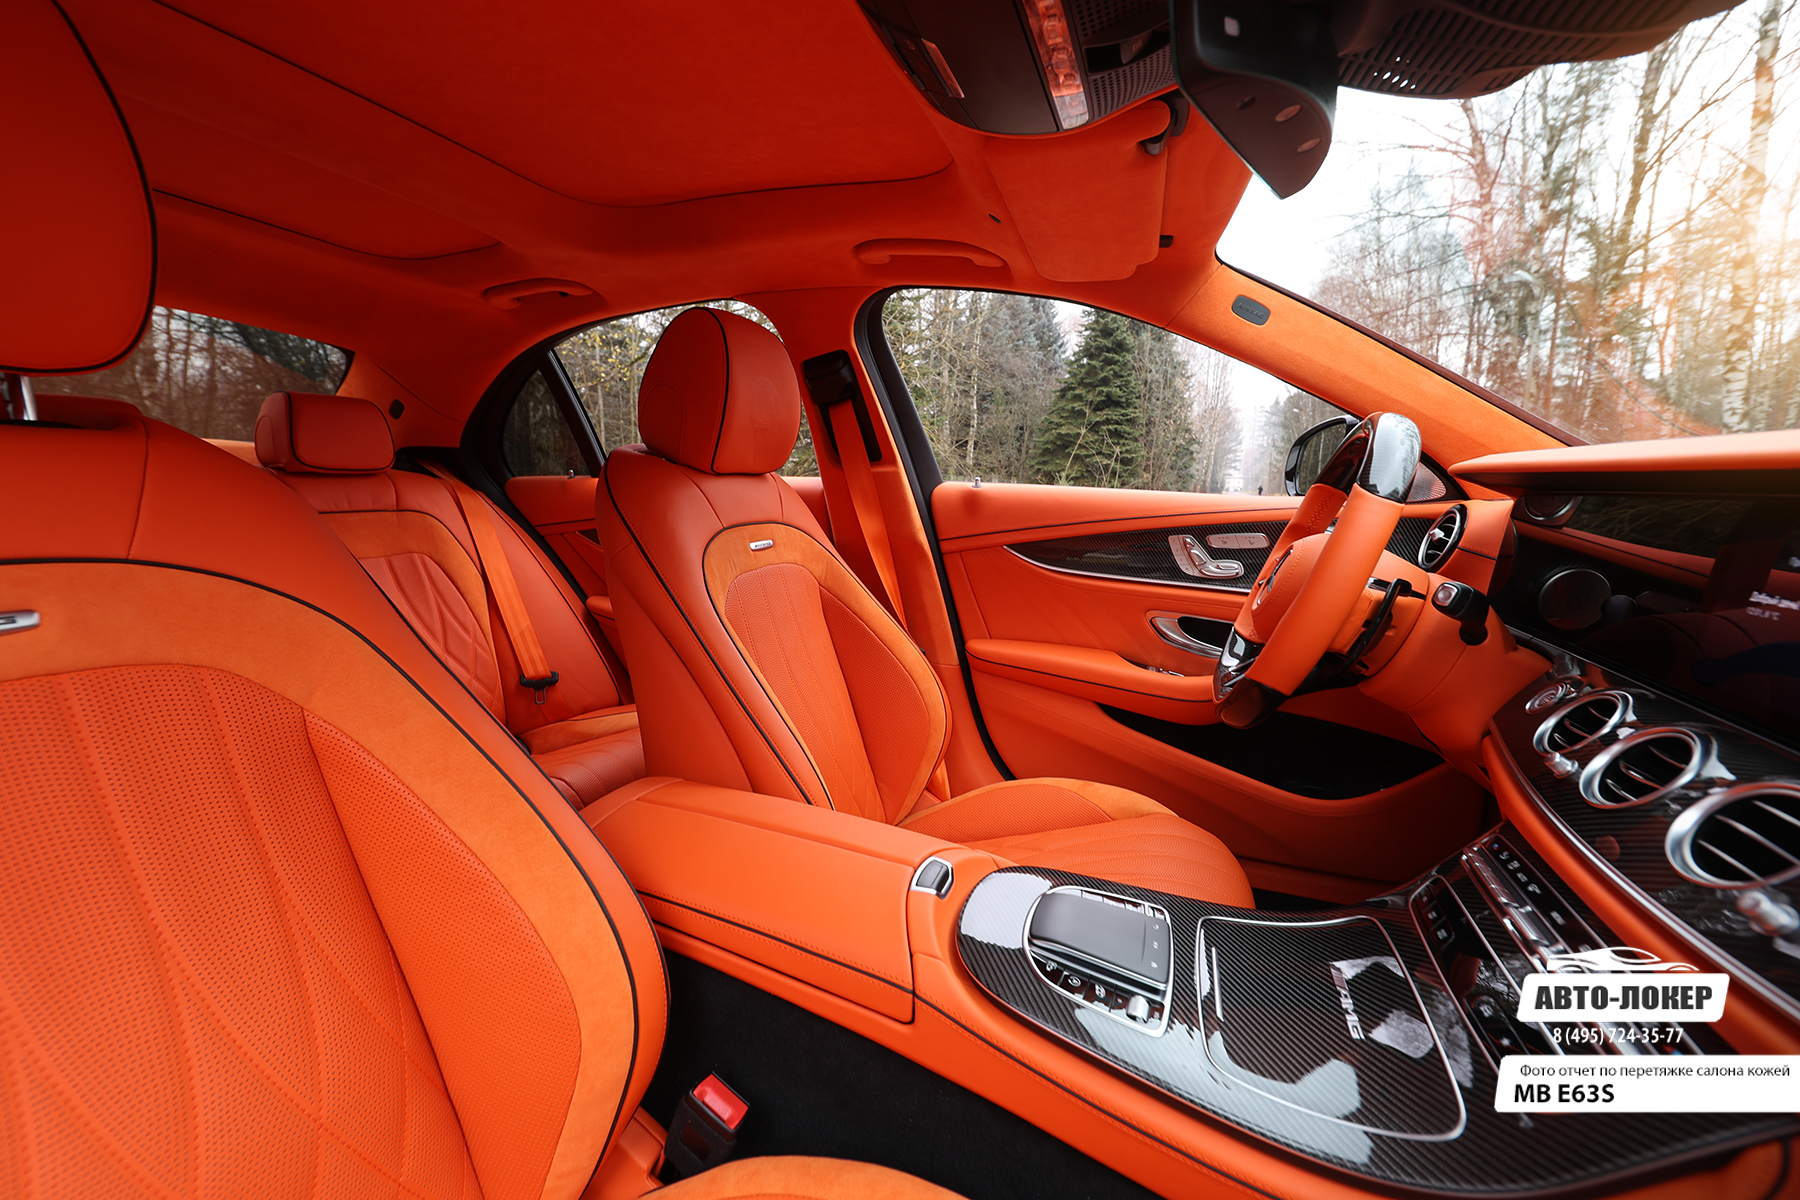 Перетяжка центральной консоли и передних сидений салона MB E63S (W213) оранжевой кожей